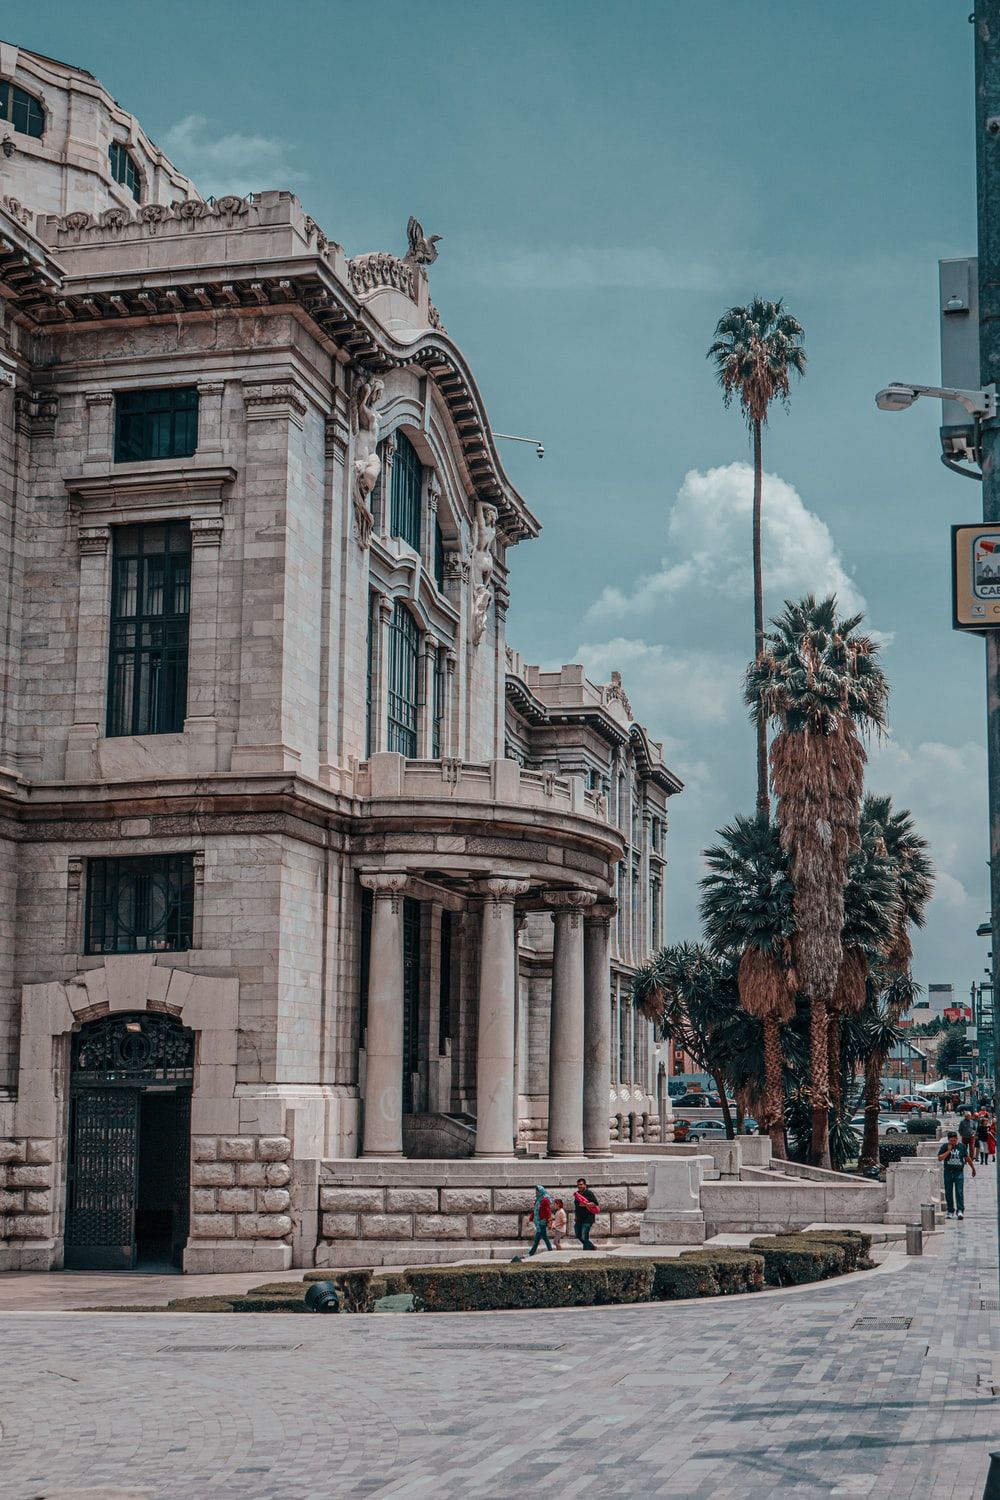 Ciudad De Mexico Picture. Download Free Image